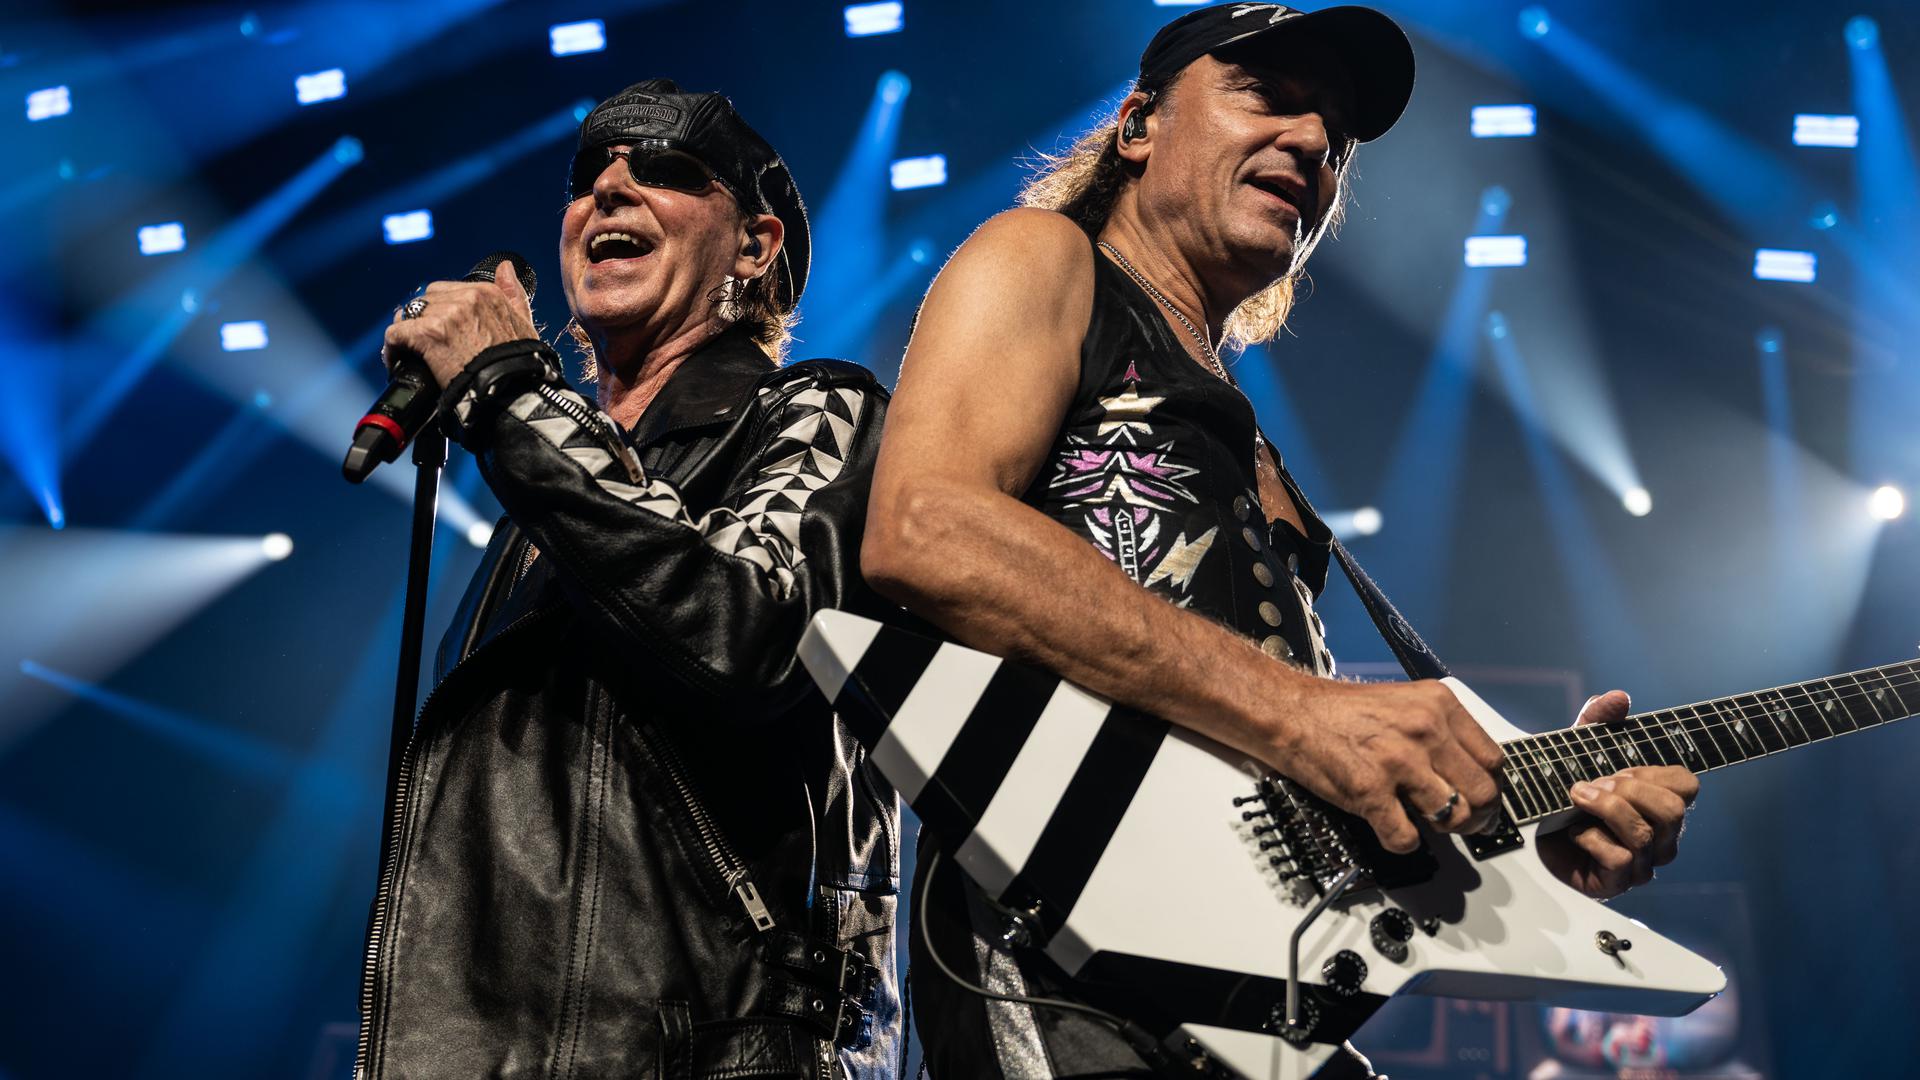 Auftaktkonzert der Deutschland-Tour «Rock Believer-World Tour» der deutschen Rockband Scorpions im Kongresszentrum Westfalenhallen Halle 3B. Klaus Meine (Gesang, l) und Matthias Jabs (Gitarre).